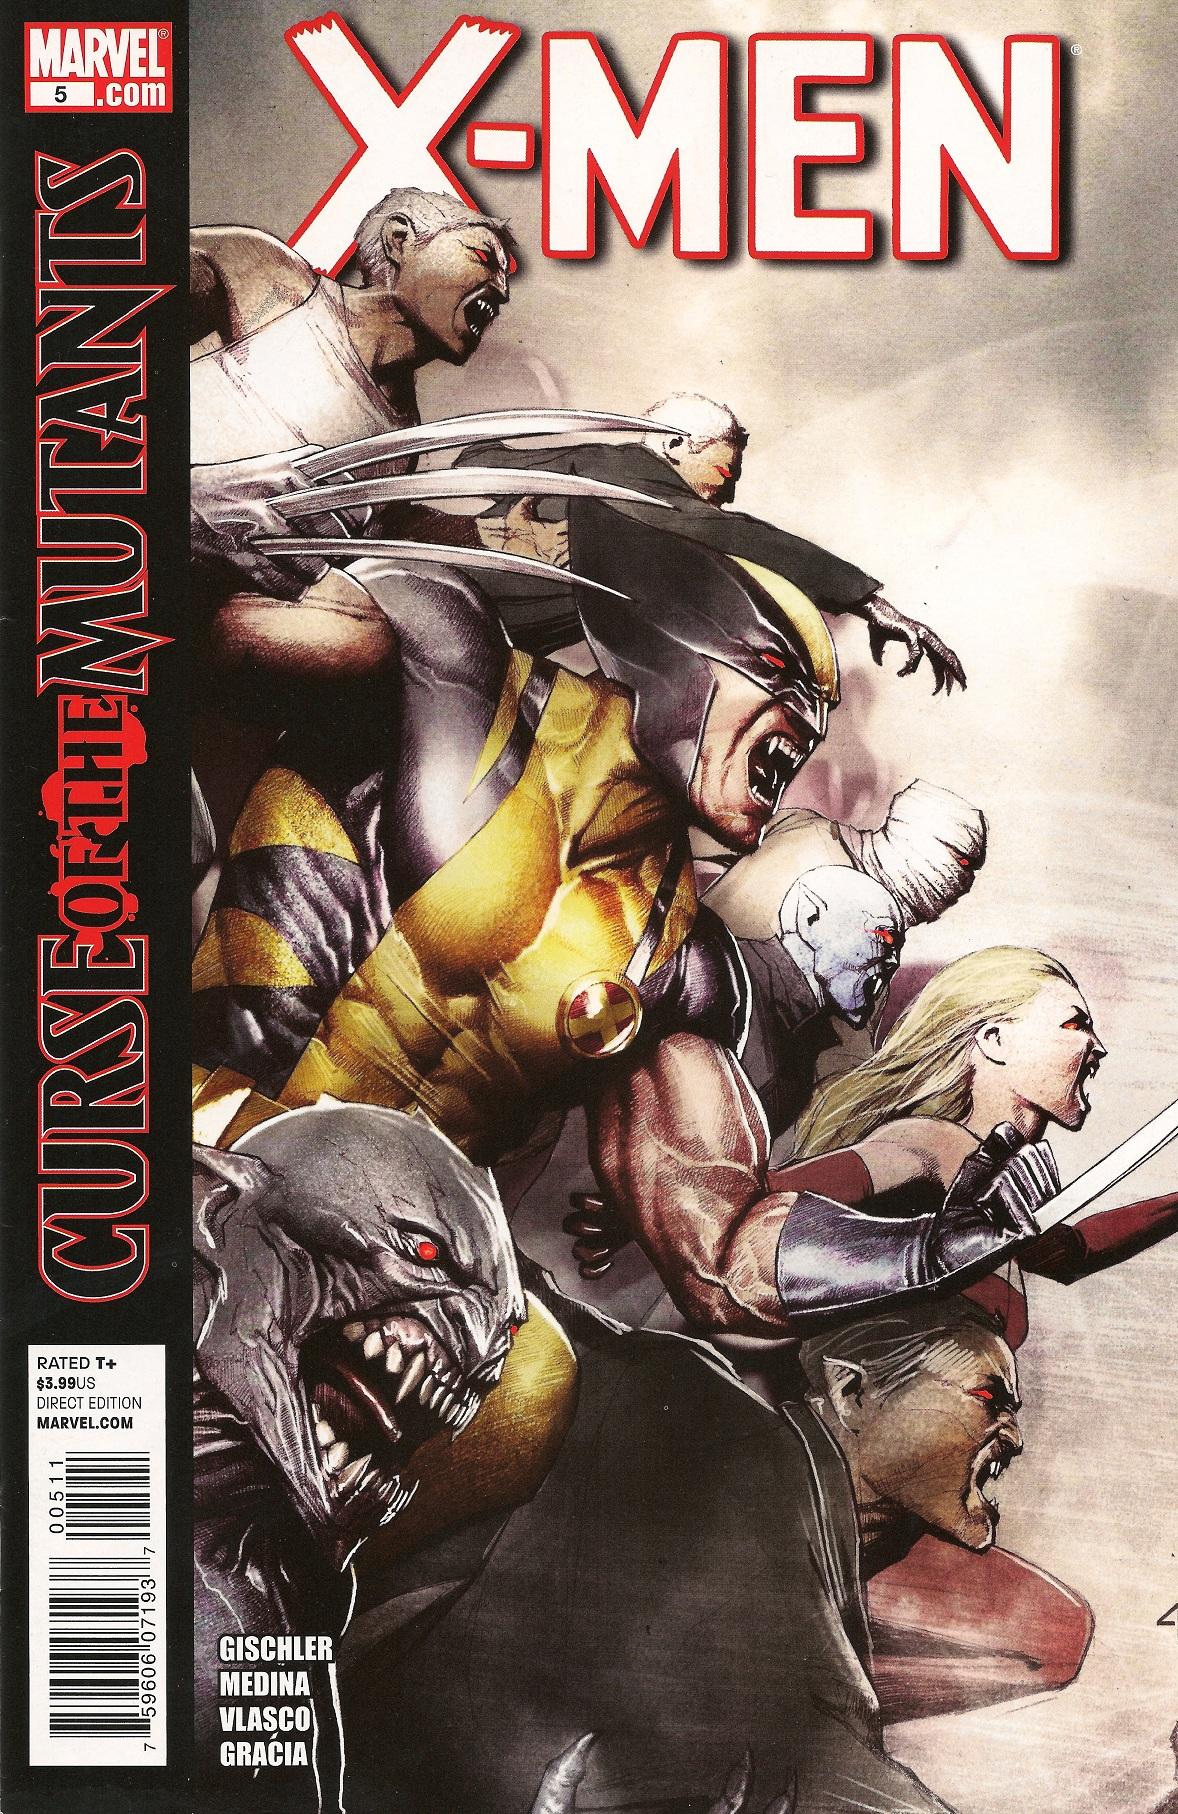 X-Men Vol. 3 #5